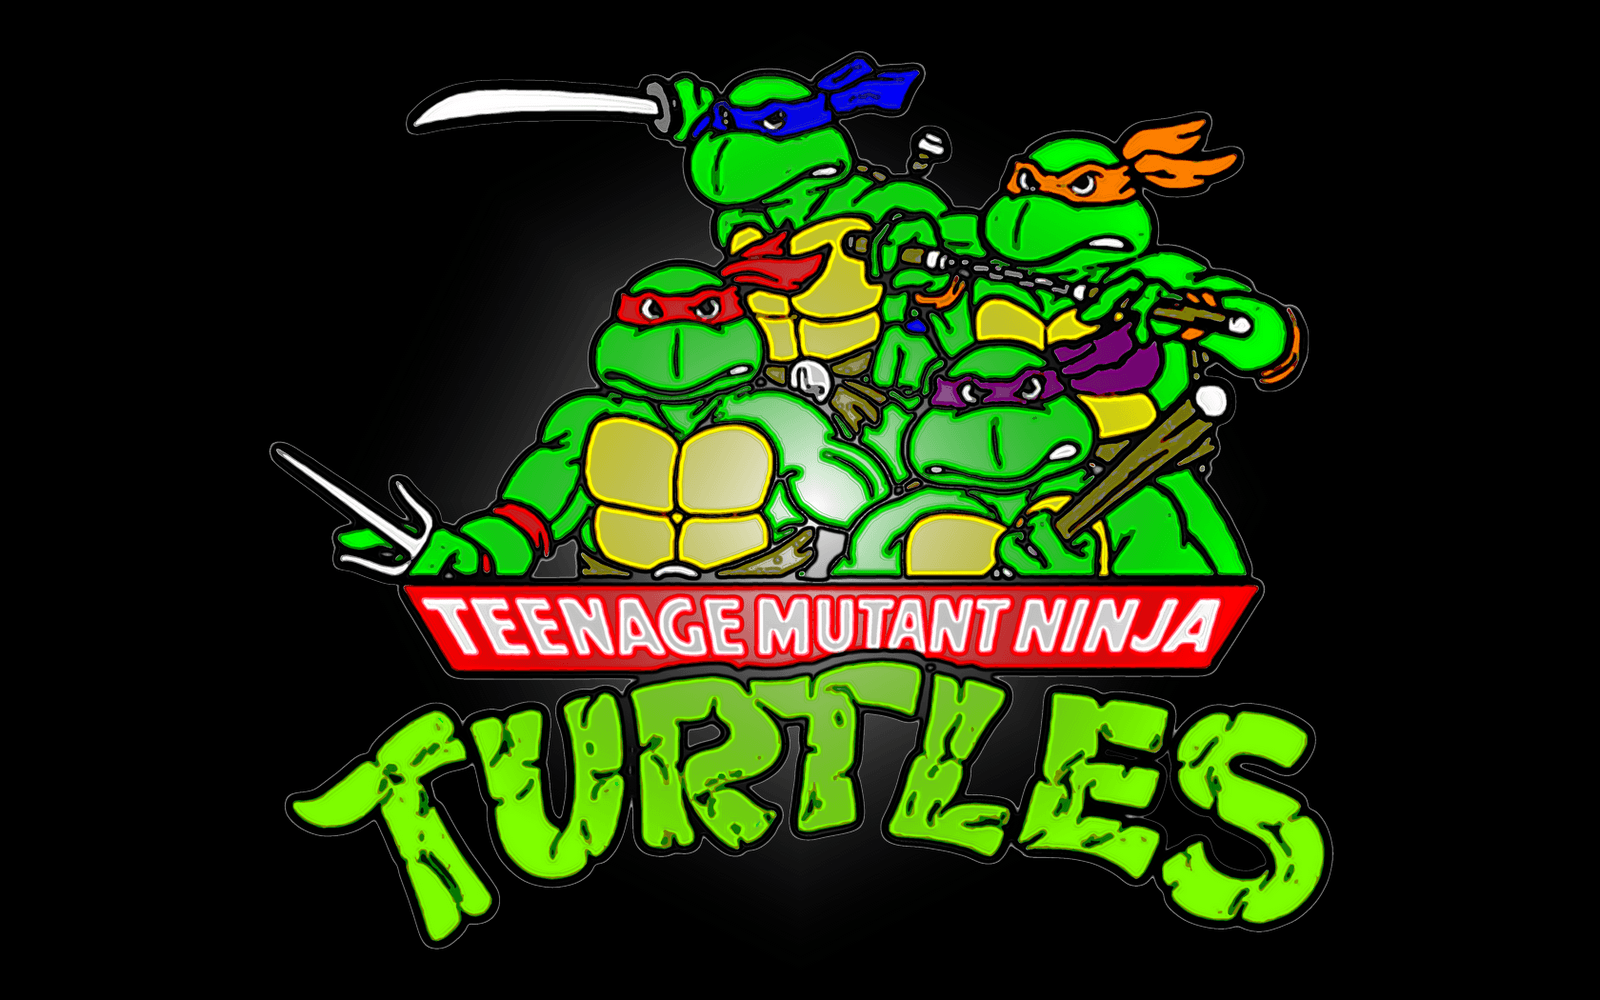 image of teenage mutant ninja turtles Image. Ninja turtles, Teenage mutant ninja, Ninja turtles cartoon